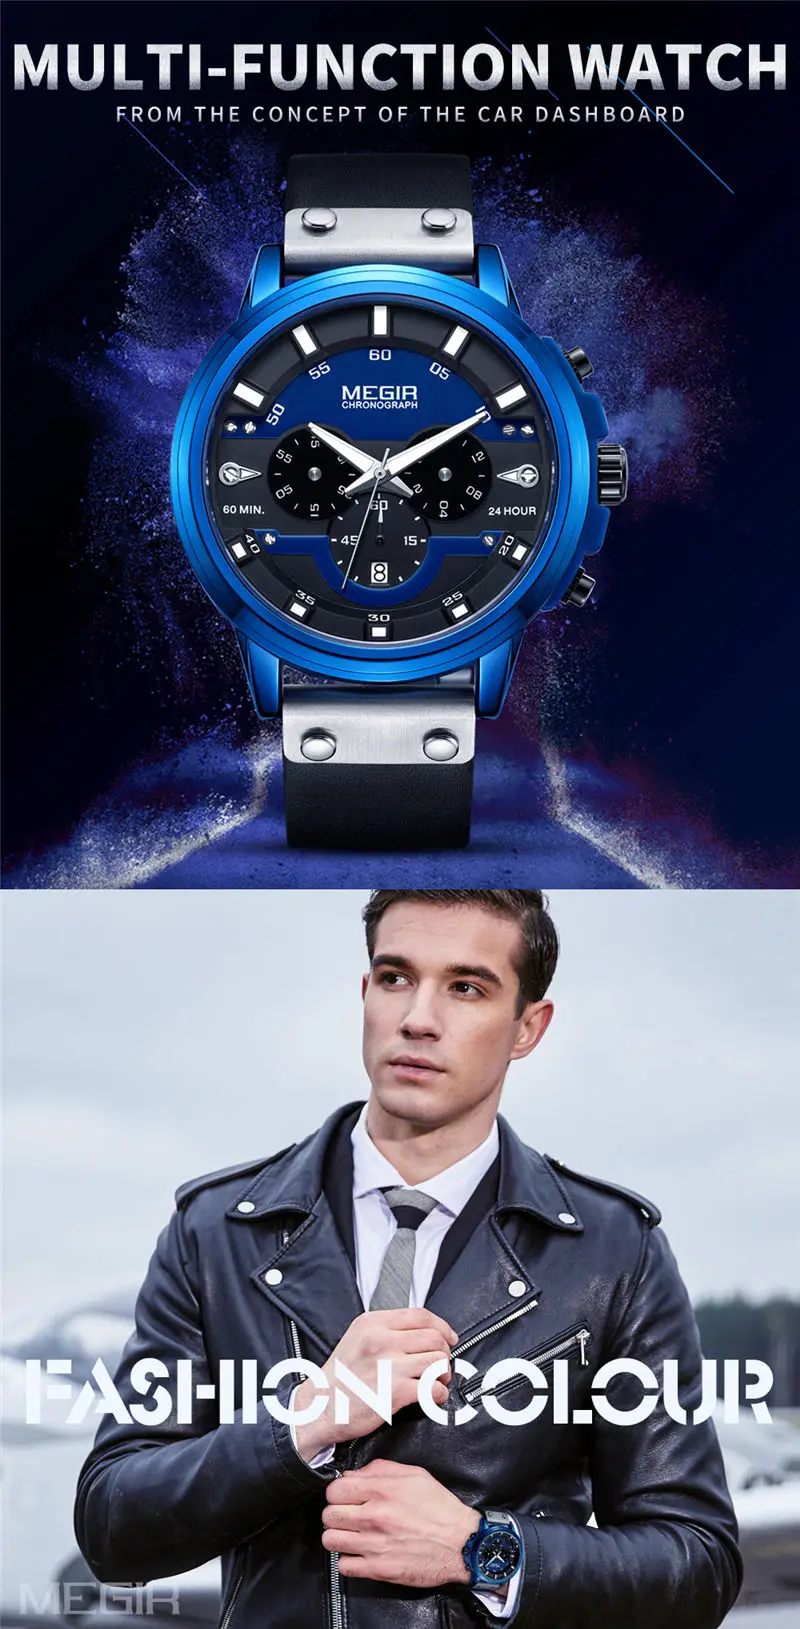 MEGIR для мужчин часы лучший бренд класса люкс Синий хронограф наручные часы с календарем Военная Униформа Спорт кожаный ремешок мужской Relogio Masculino 2080